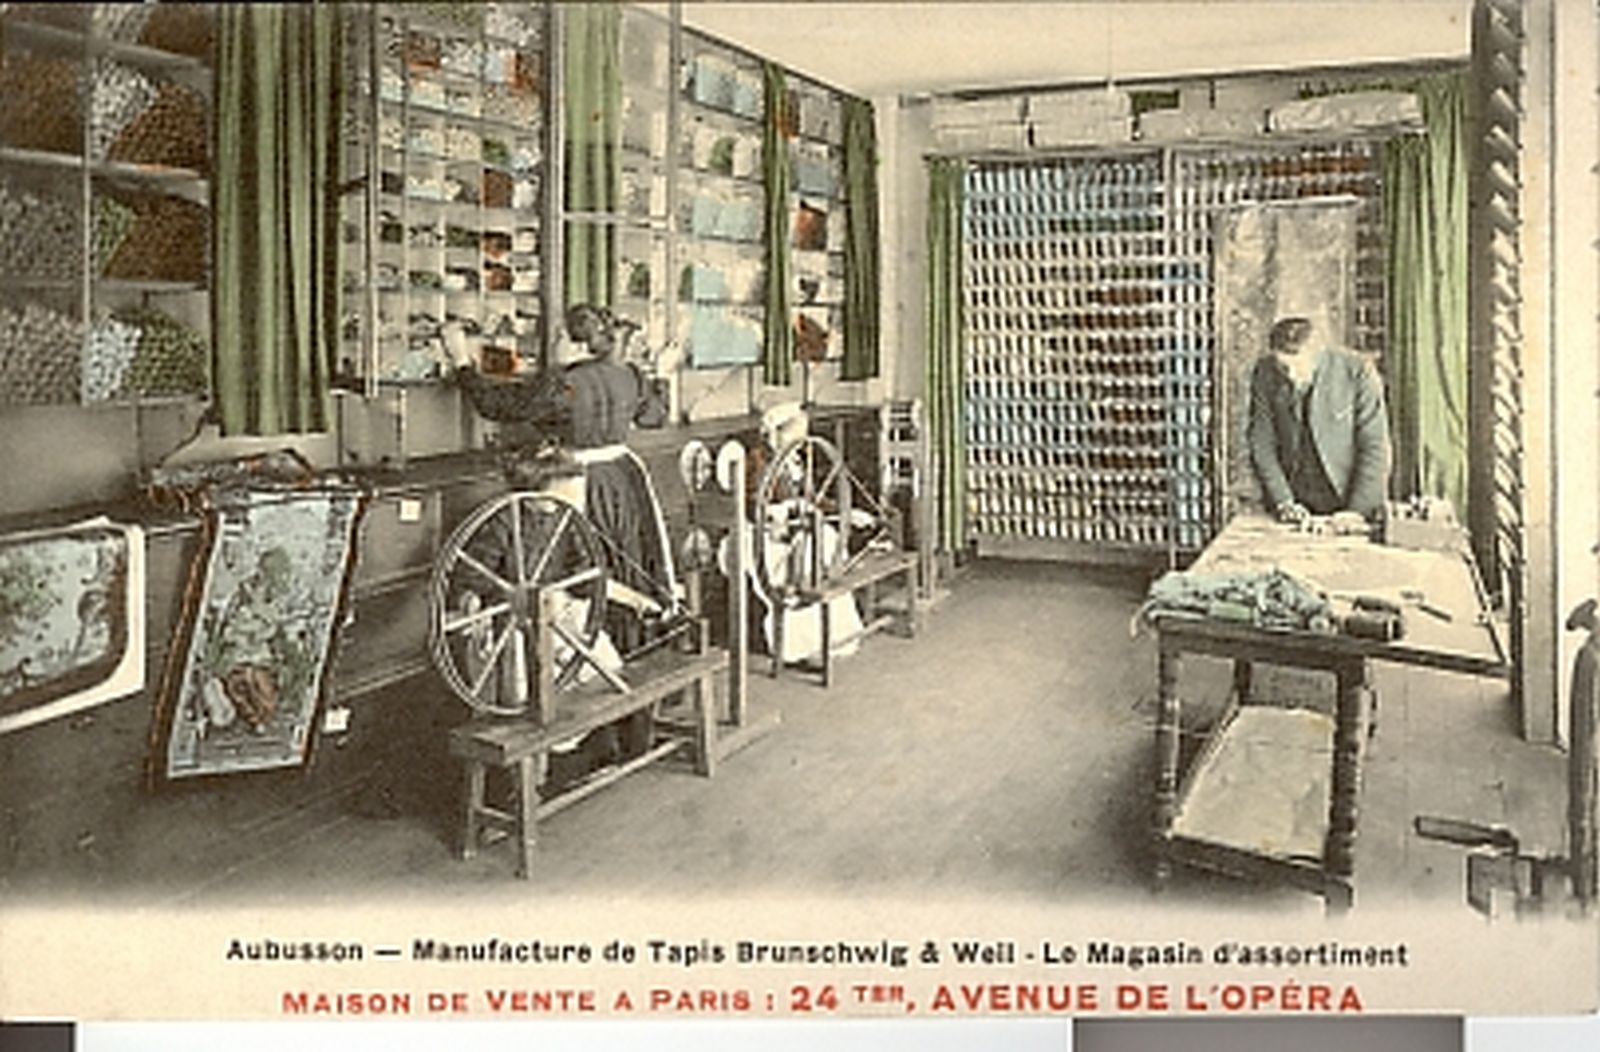 Carte postale de la manufacture Brunschwig et Weil (1er quart 20e siècle) : le magasin d'assortiment (collection particulière).